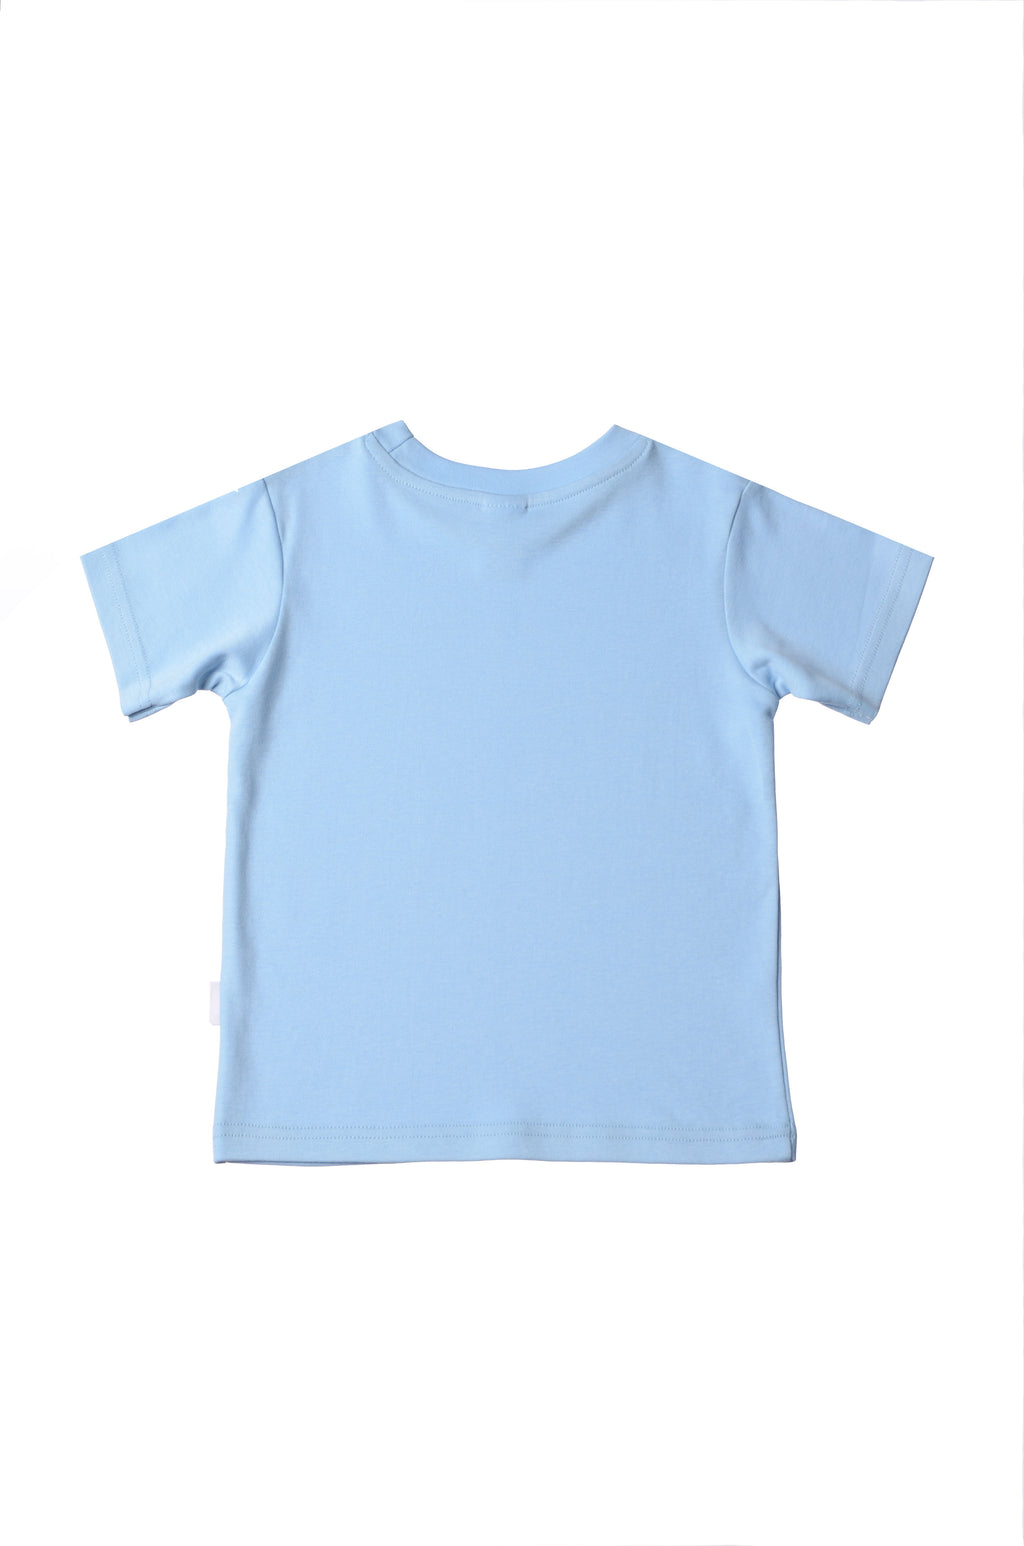 blaues T-Shirt aus Bio Baumwolle mit Aufdruck "kleiner Scherzkeks"